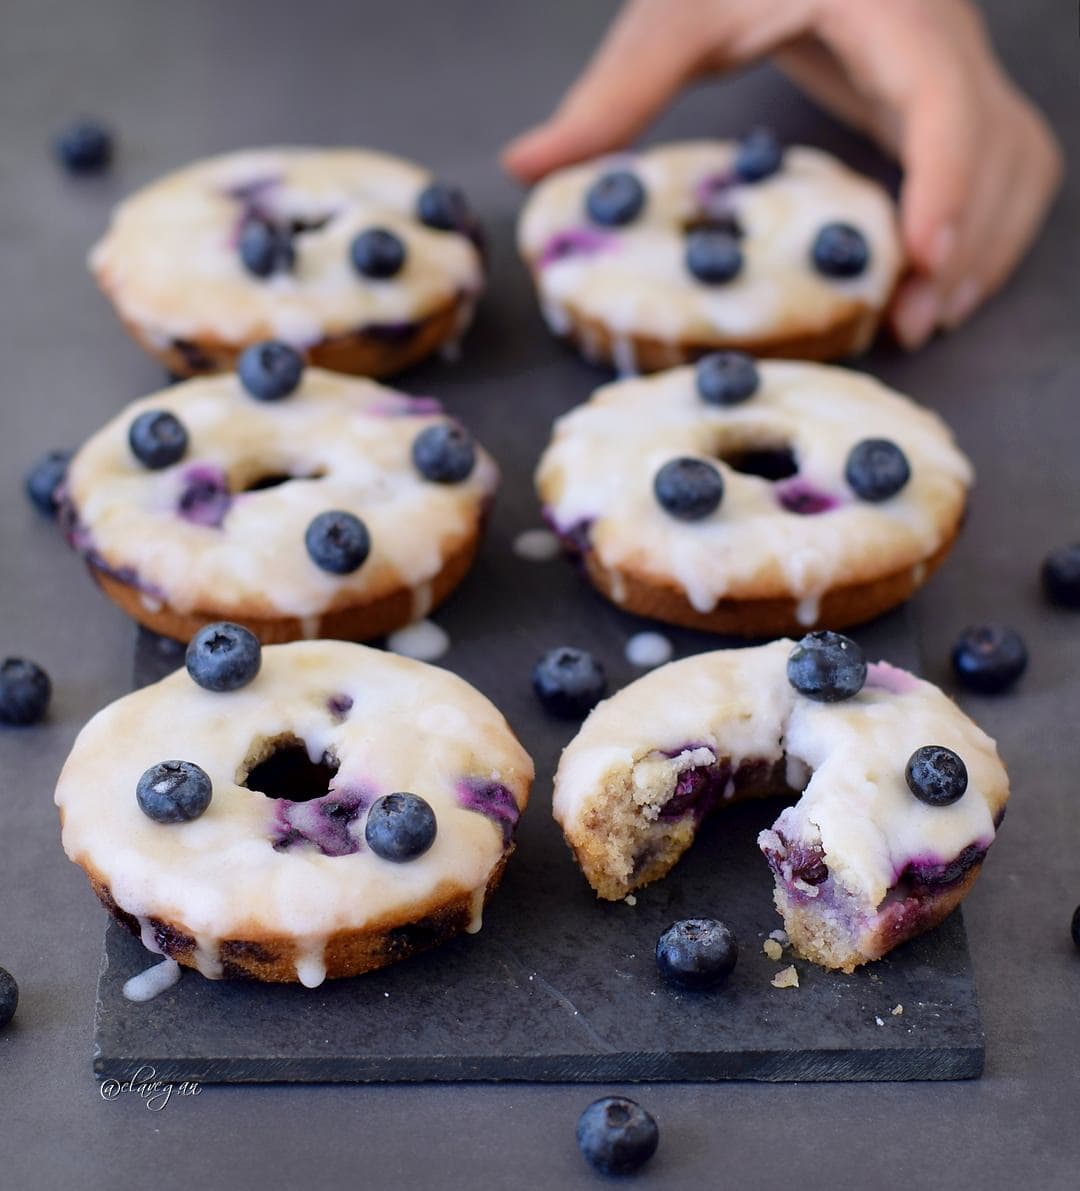 Vegan blueberry donuts with a lemon glaze